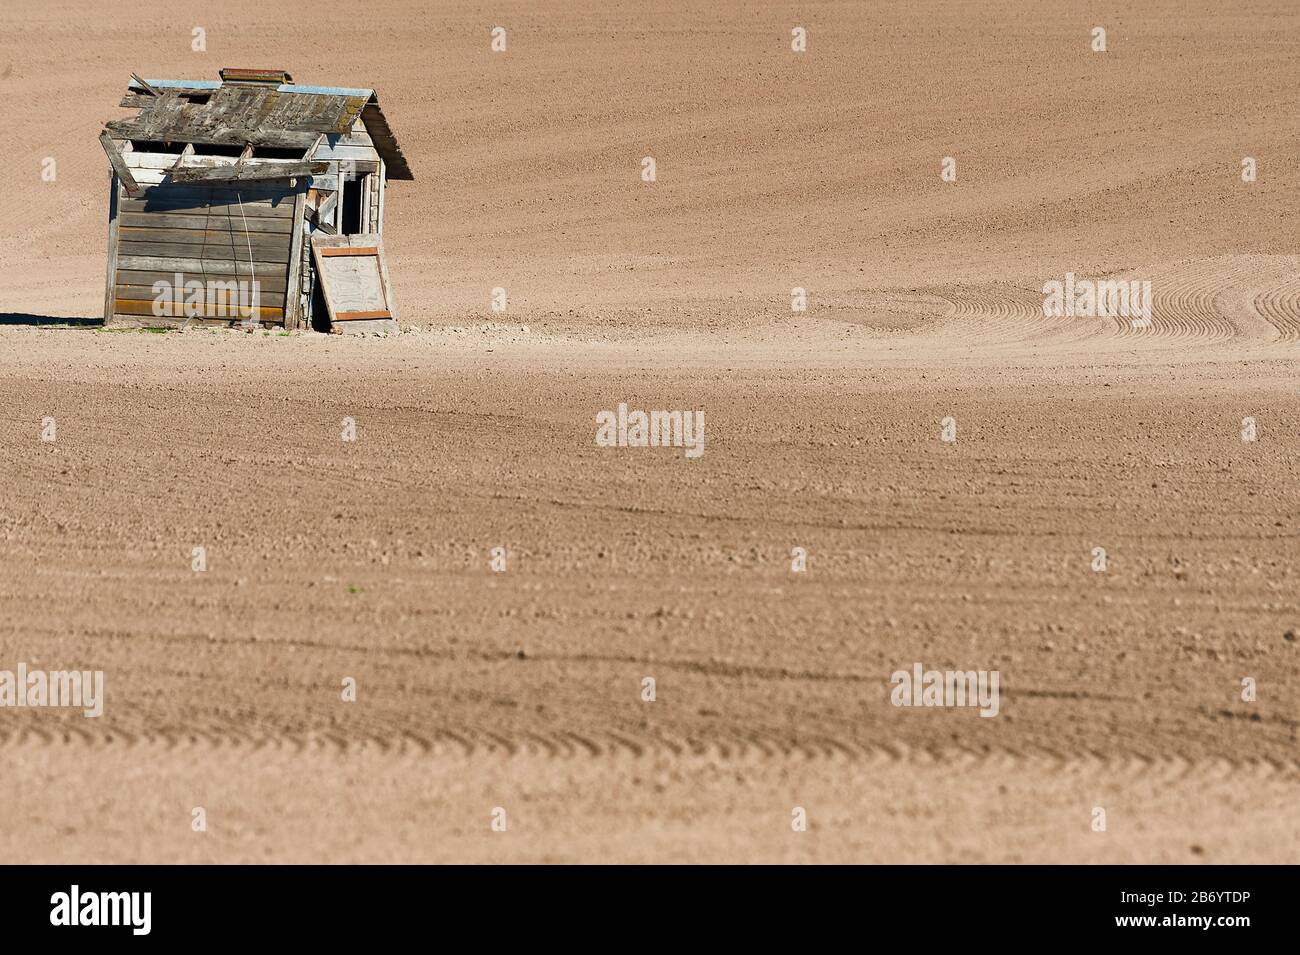 Frisch gearbeiteter Agrarboden mit einsamem Schnack in diesem minimalistischen Bild. Stockfoto